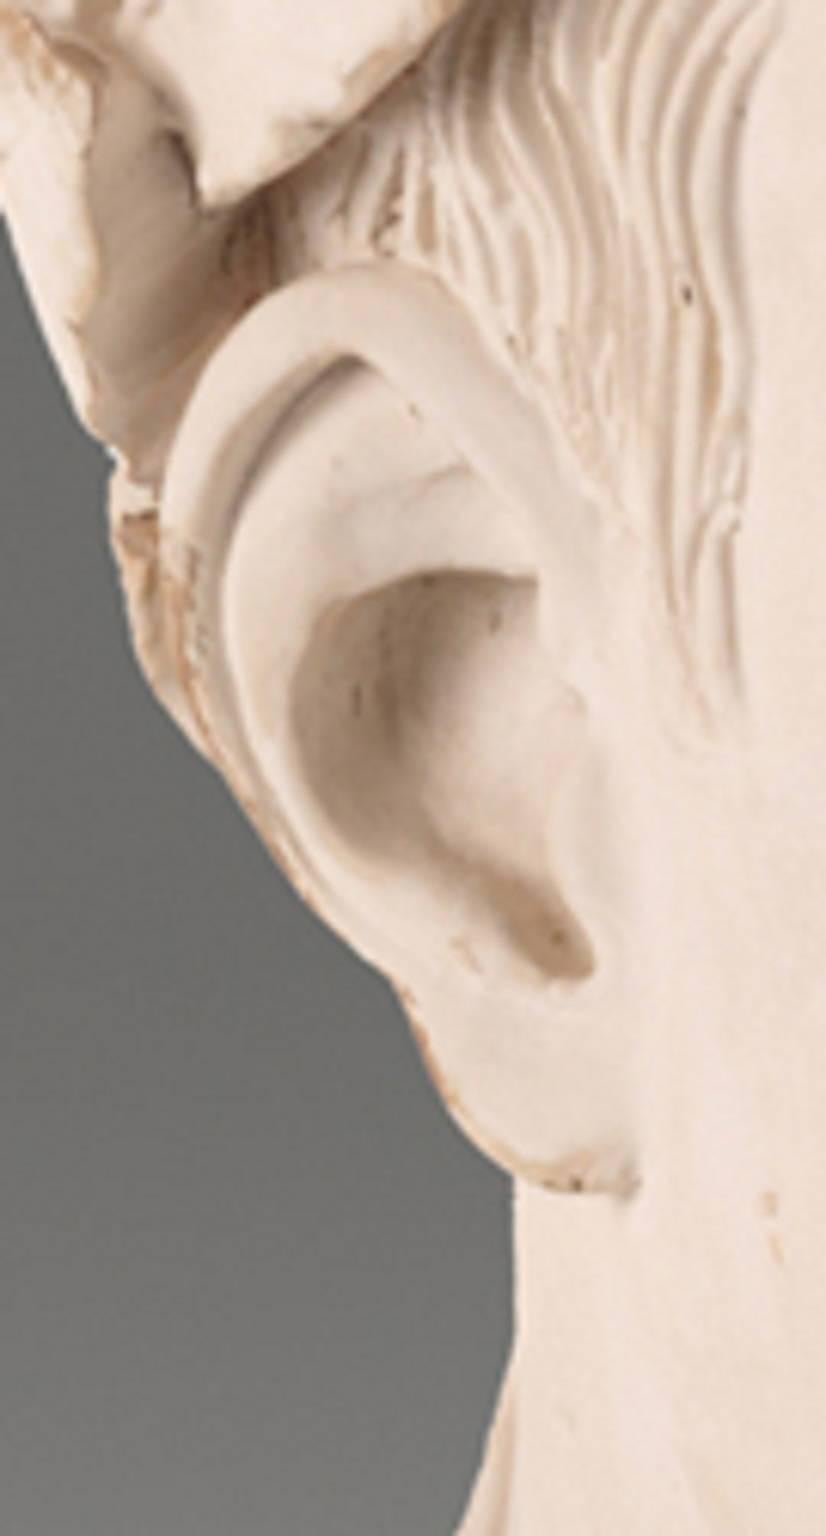 Buste en bois finement sculpté de Jules César, tiré d'un buste original en marbre, sculpté en pin vieilli et décoré au gesso. Si nécessaire, ils peuvent être fabriqués selon vos besoins spécifiques.
Cet article est fabriqué sur commande.

Nous